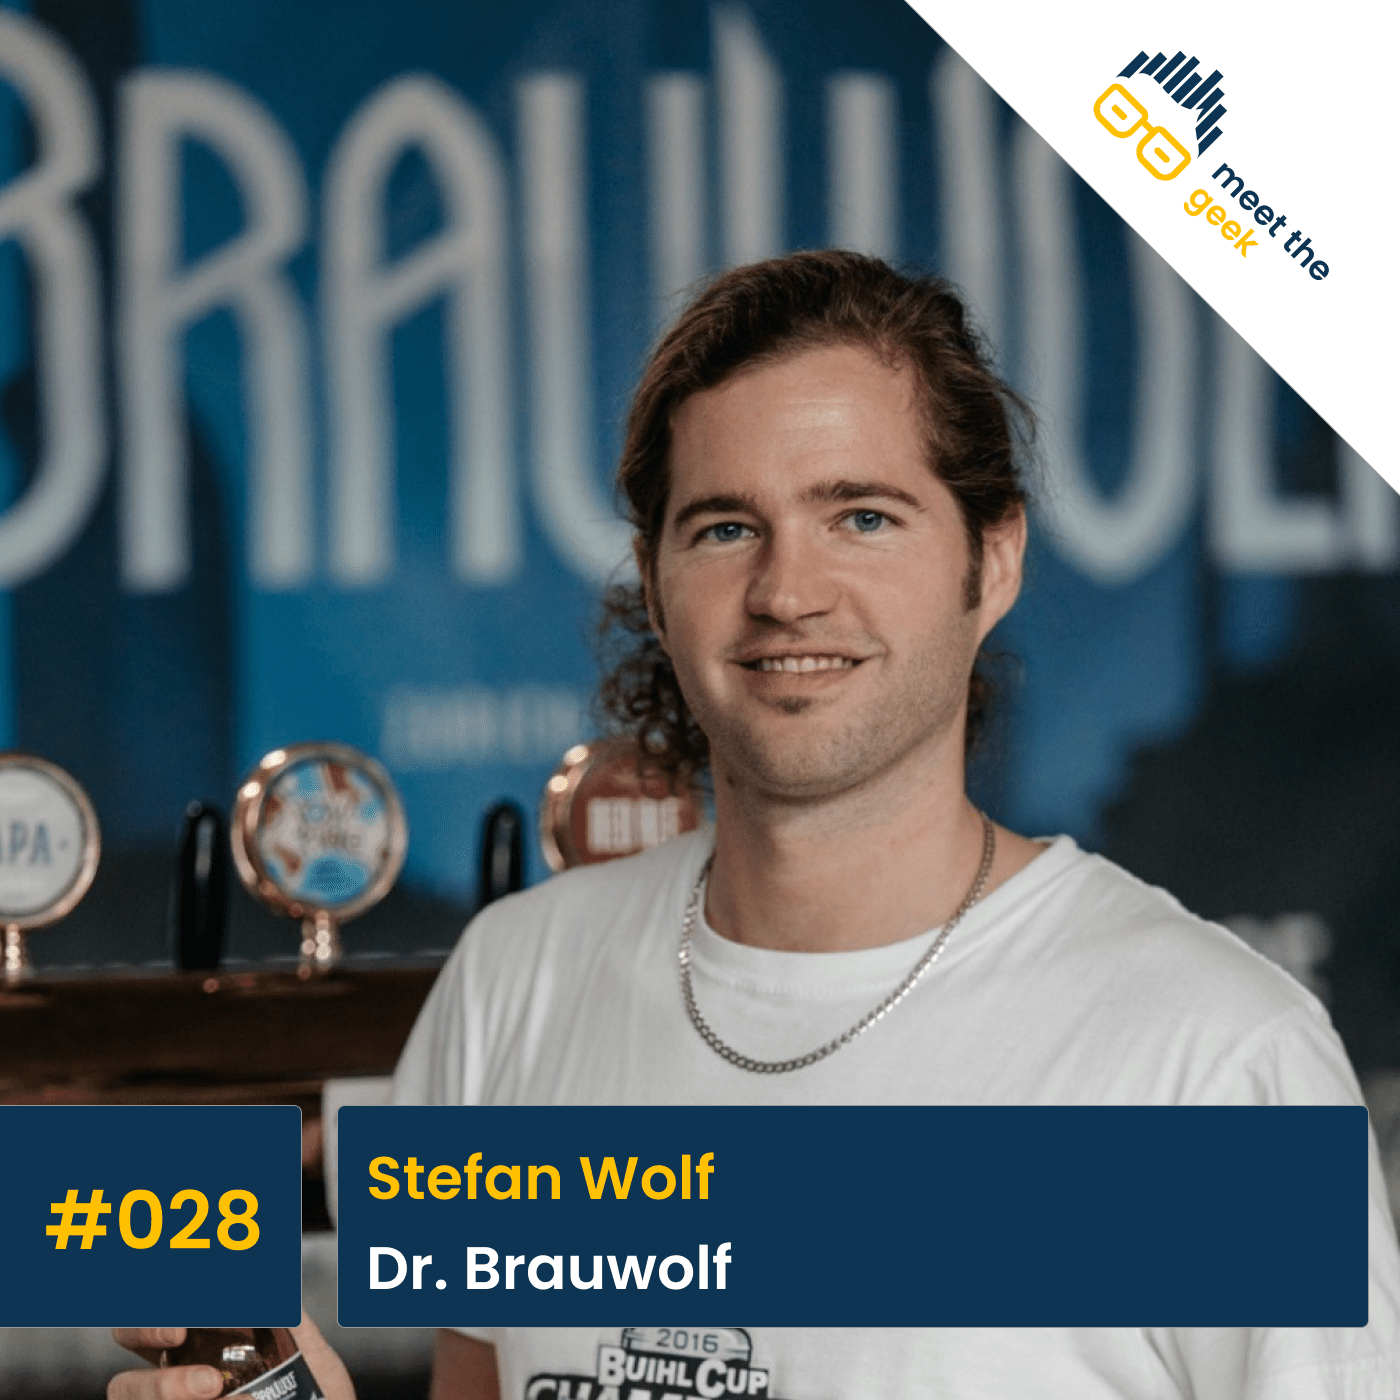 #028 Stefan Wolf, Dr. Brauwolf